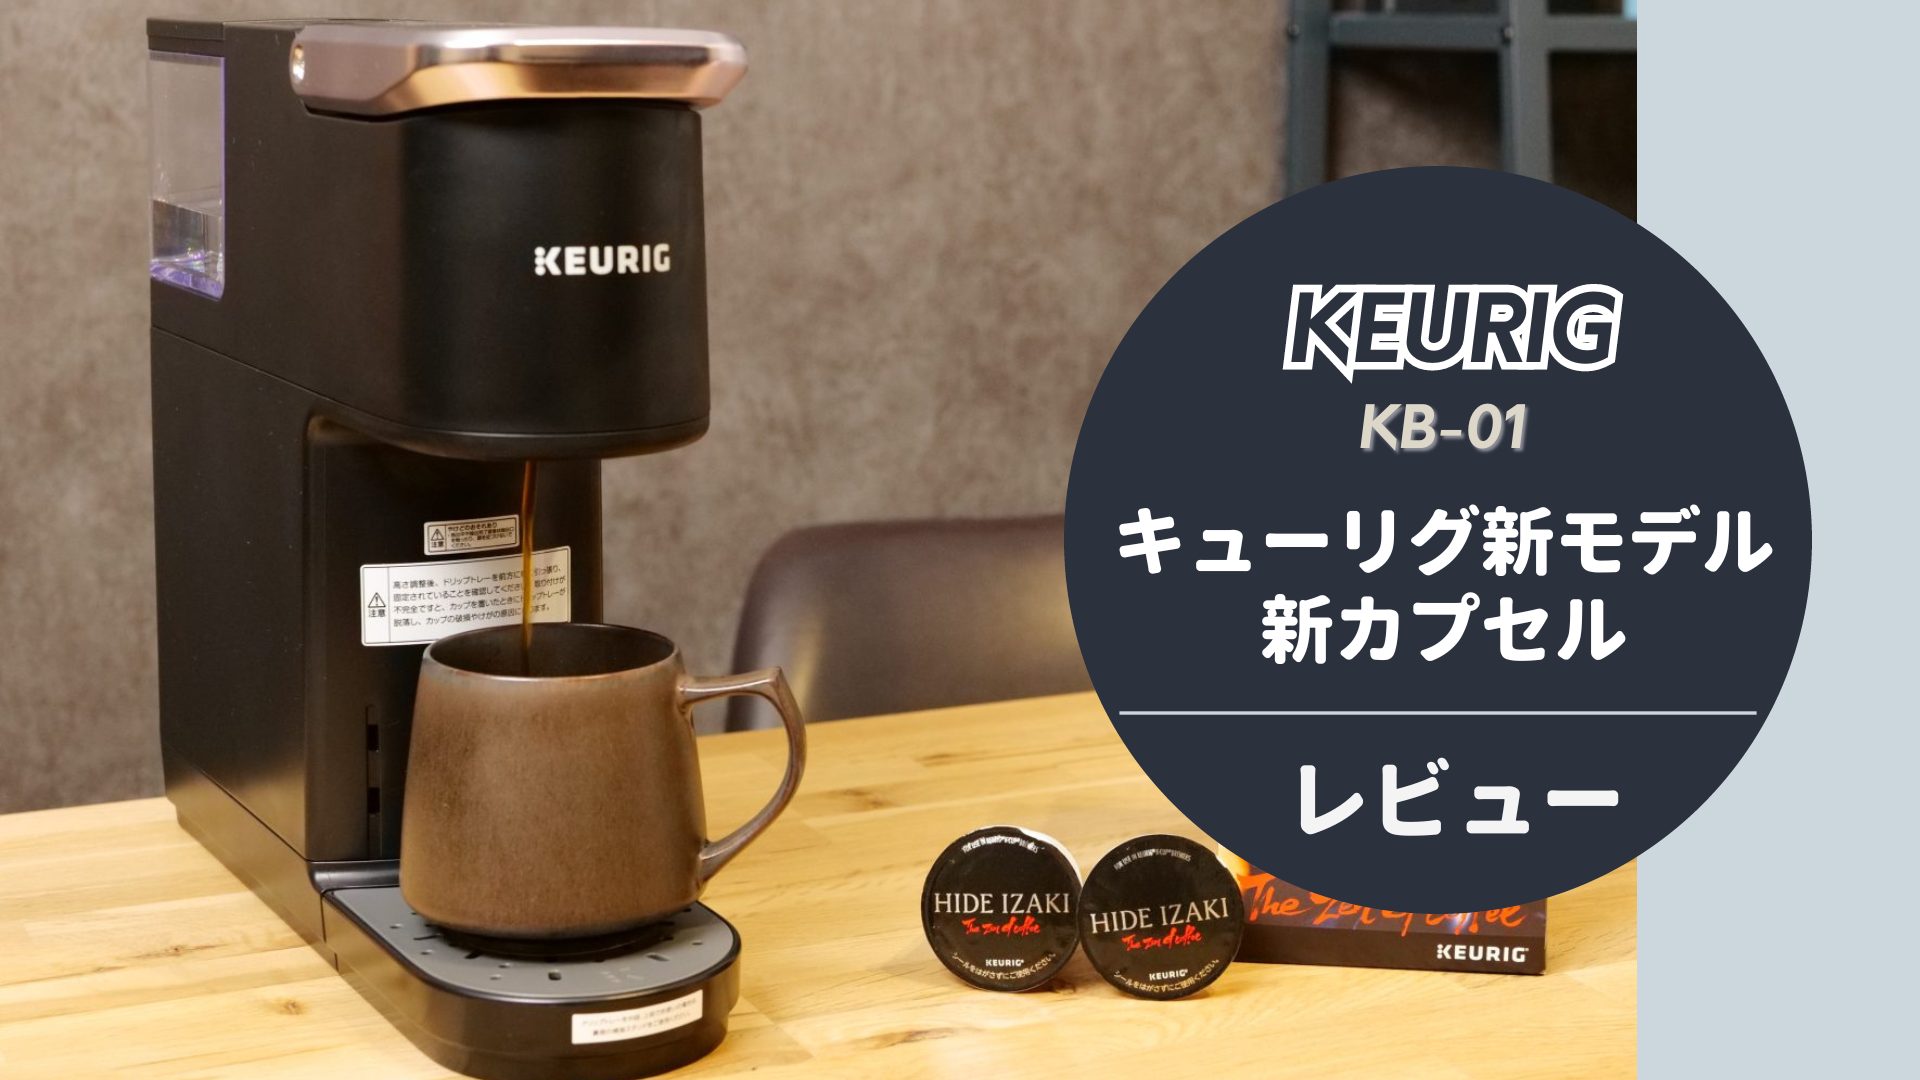  【本音レビュー】KEURIGの最新カプセル式コーヒーメーカーで本格カフェタイム